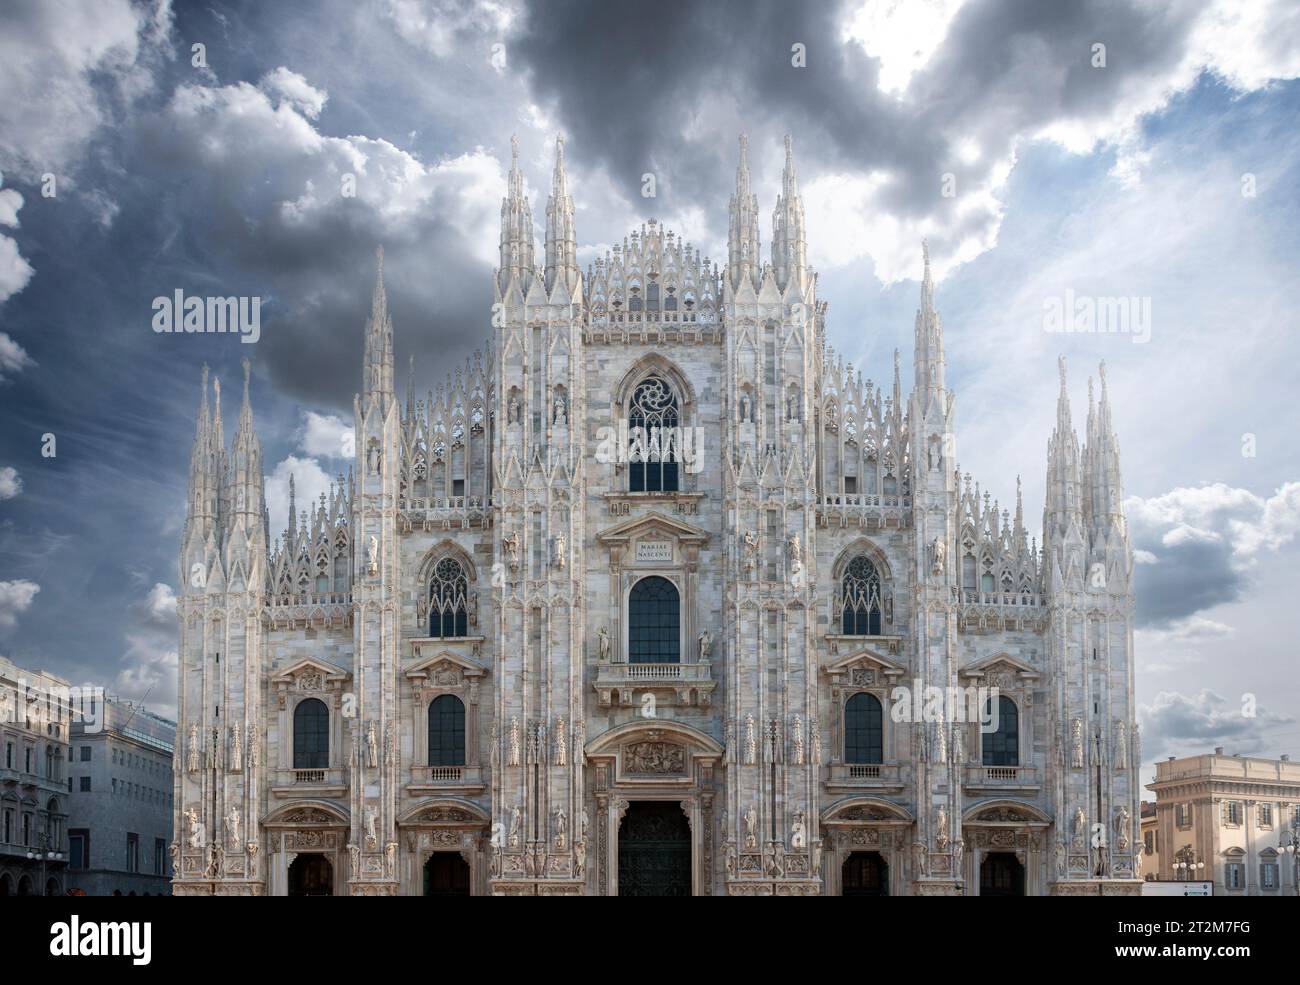 Duomo di Milano, la splendida cattedrale di Milano, Italia, conosciuta anche come Basilica della Natività di Santa Maria, durante una giornata con nuvole scure. Foto Stock